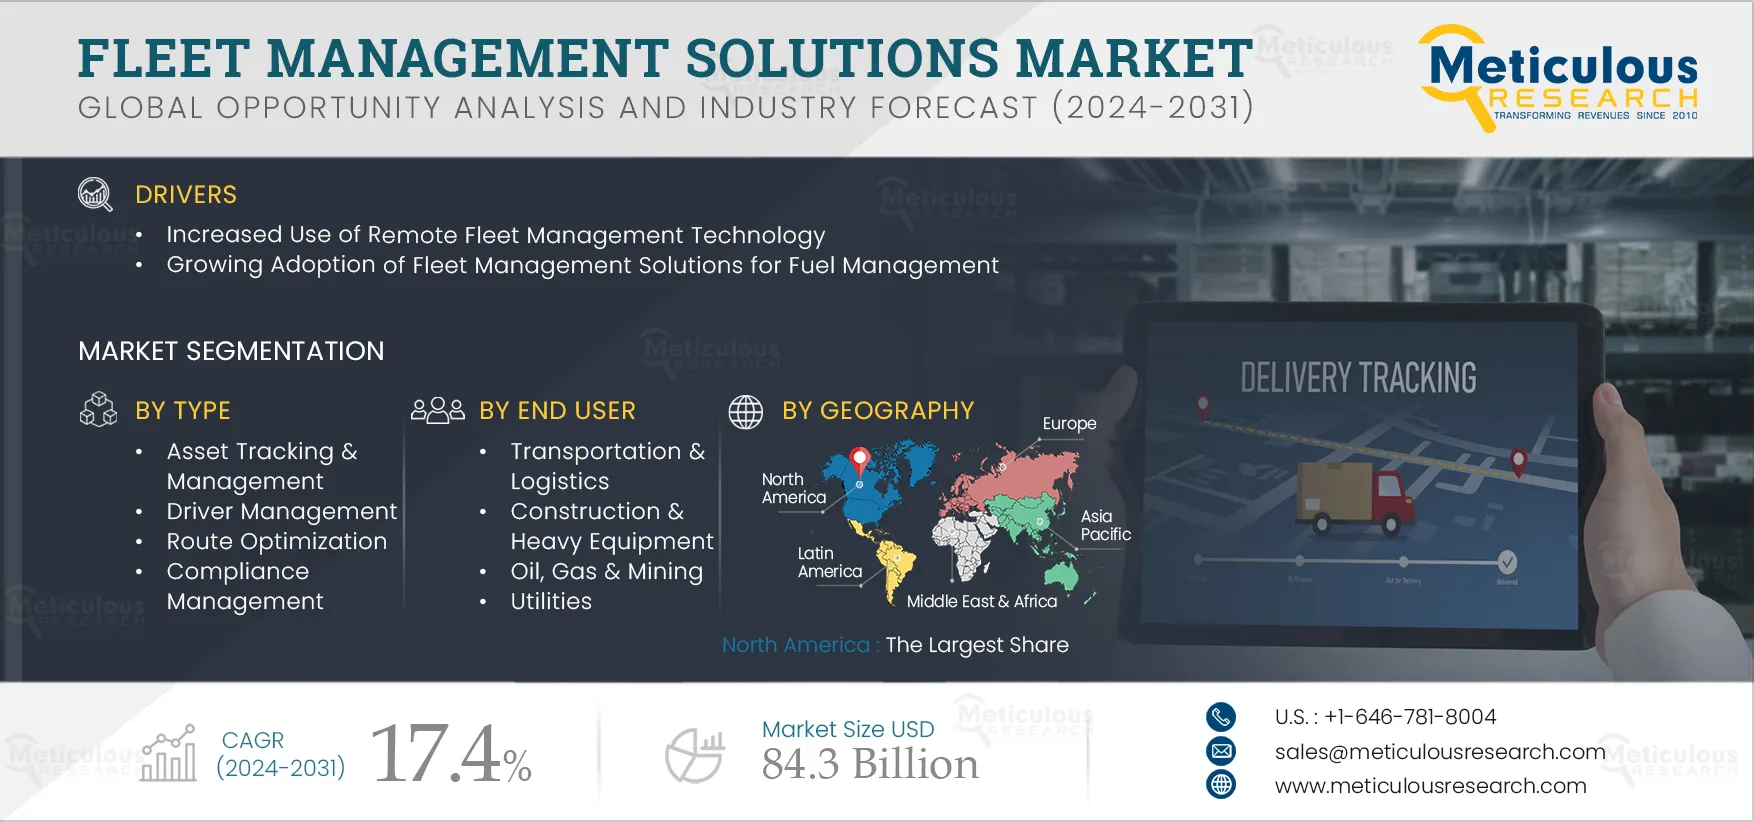 Fleet Management Solutions Market 